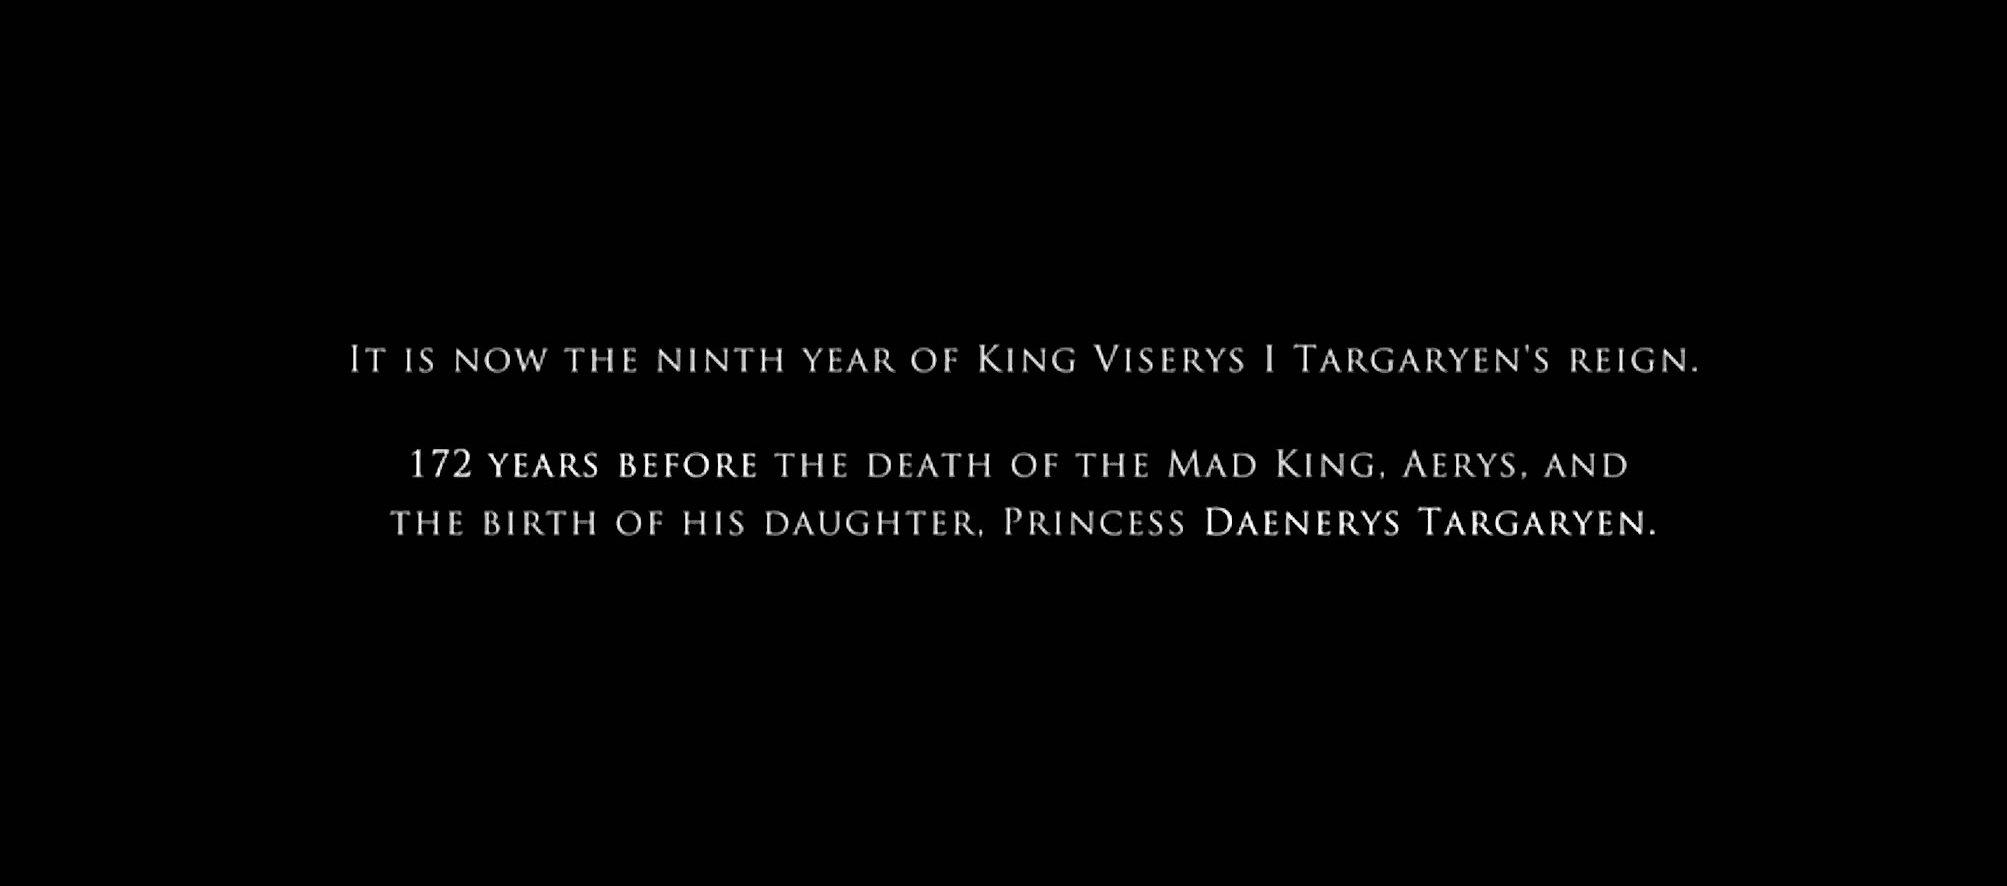 'House of the Dragon' utspelar sig 172 år före den galna kungens död och födelsen av hans dotter, Daenerys Targaryen.